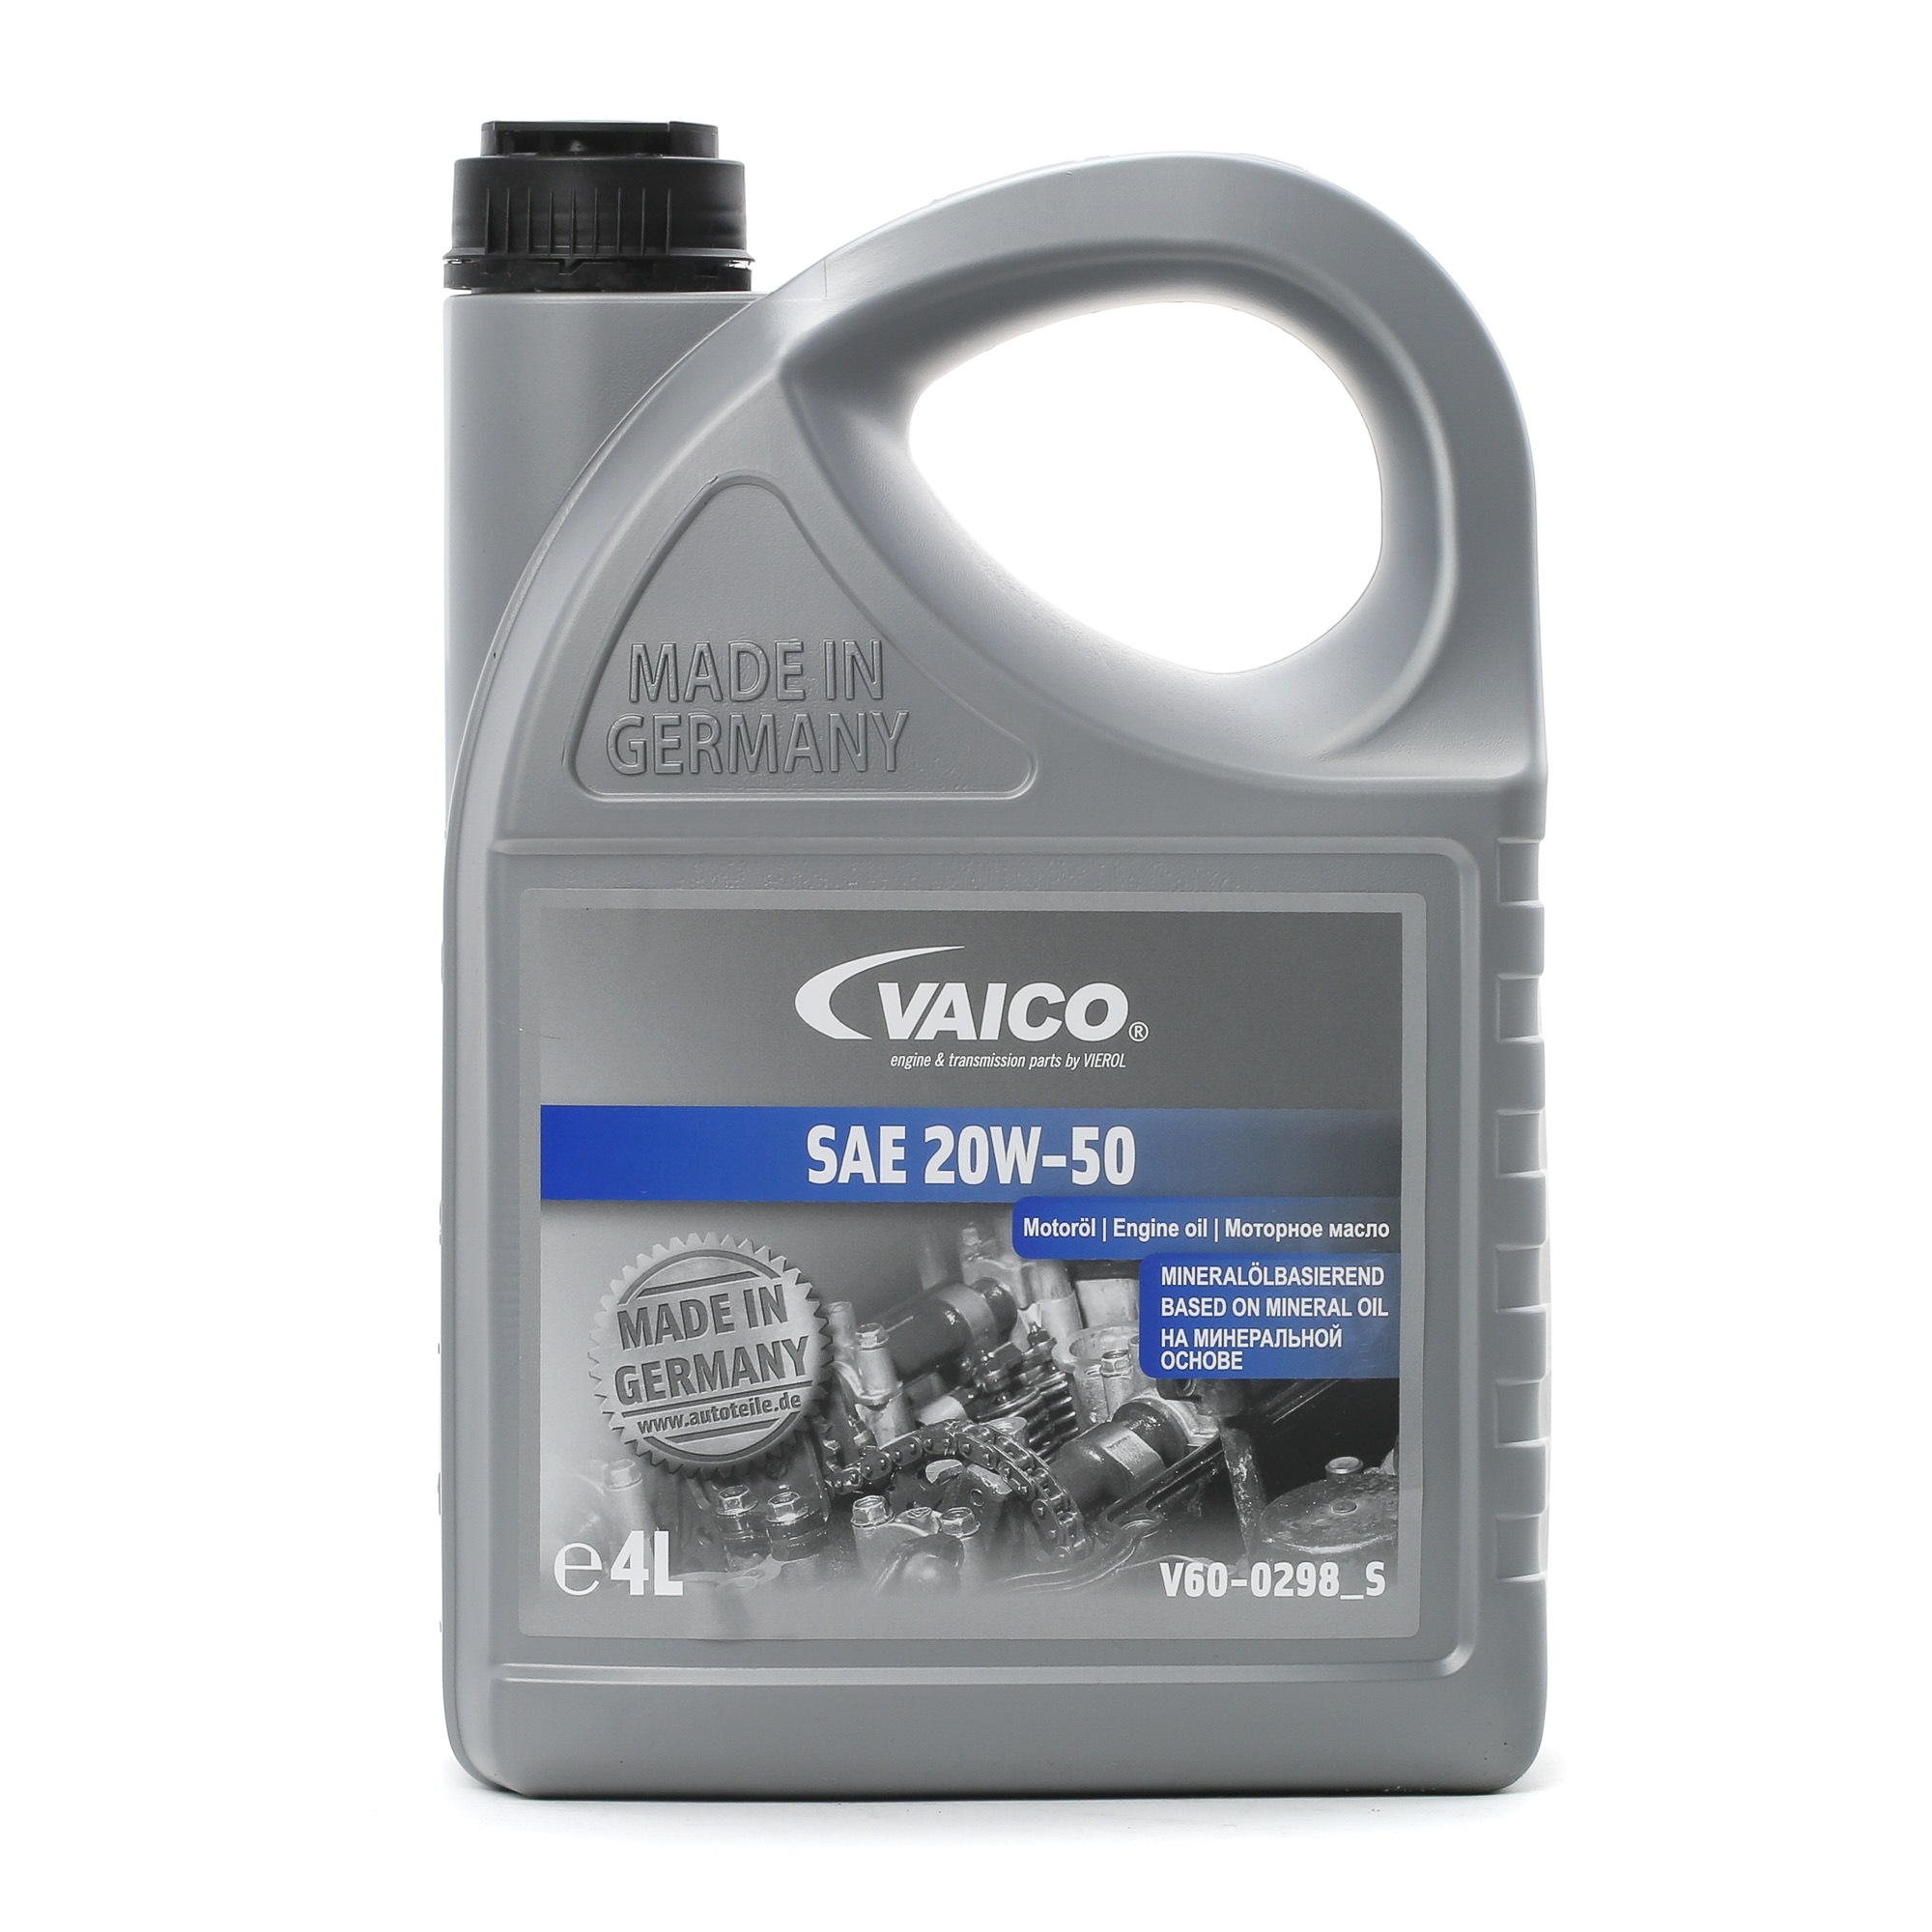 Buy Motor oil VAICO petrol V60-0298_S 20W-50, 4l, Mineral Oil